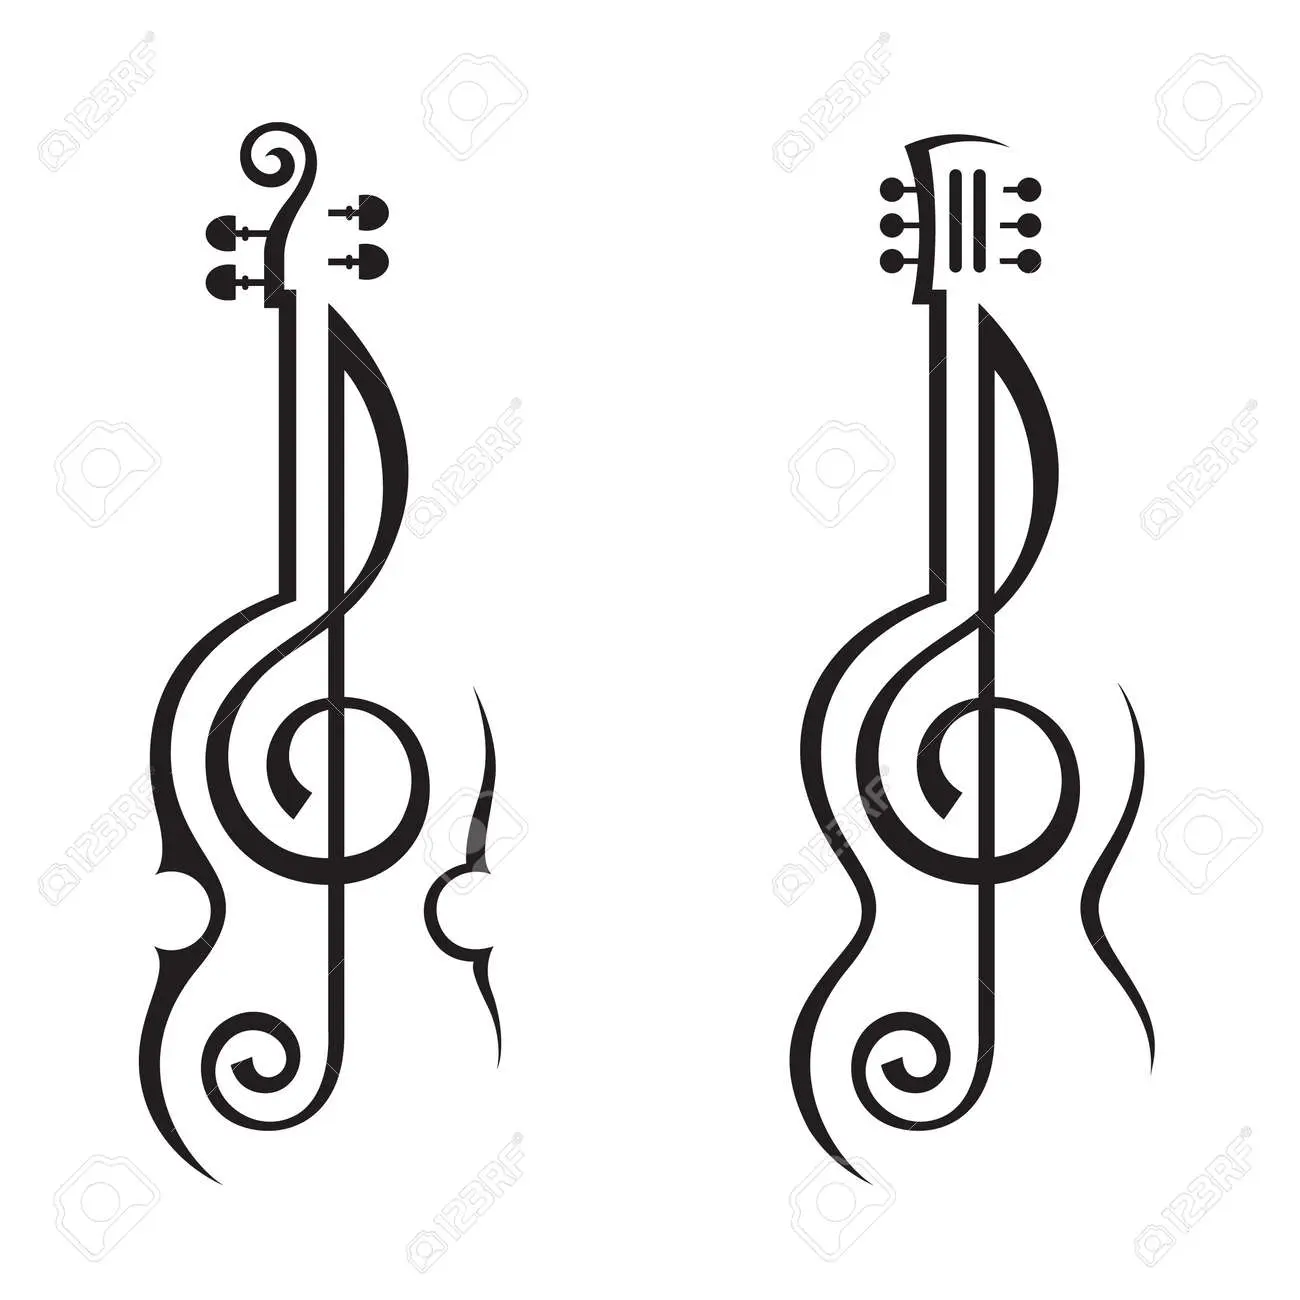 clave de sol y violin figura - Cómo se llaman las 5 líneas y los 4 espacios